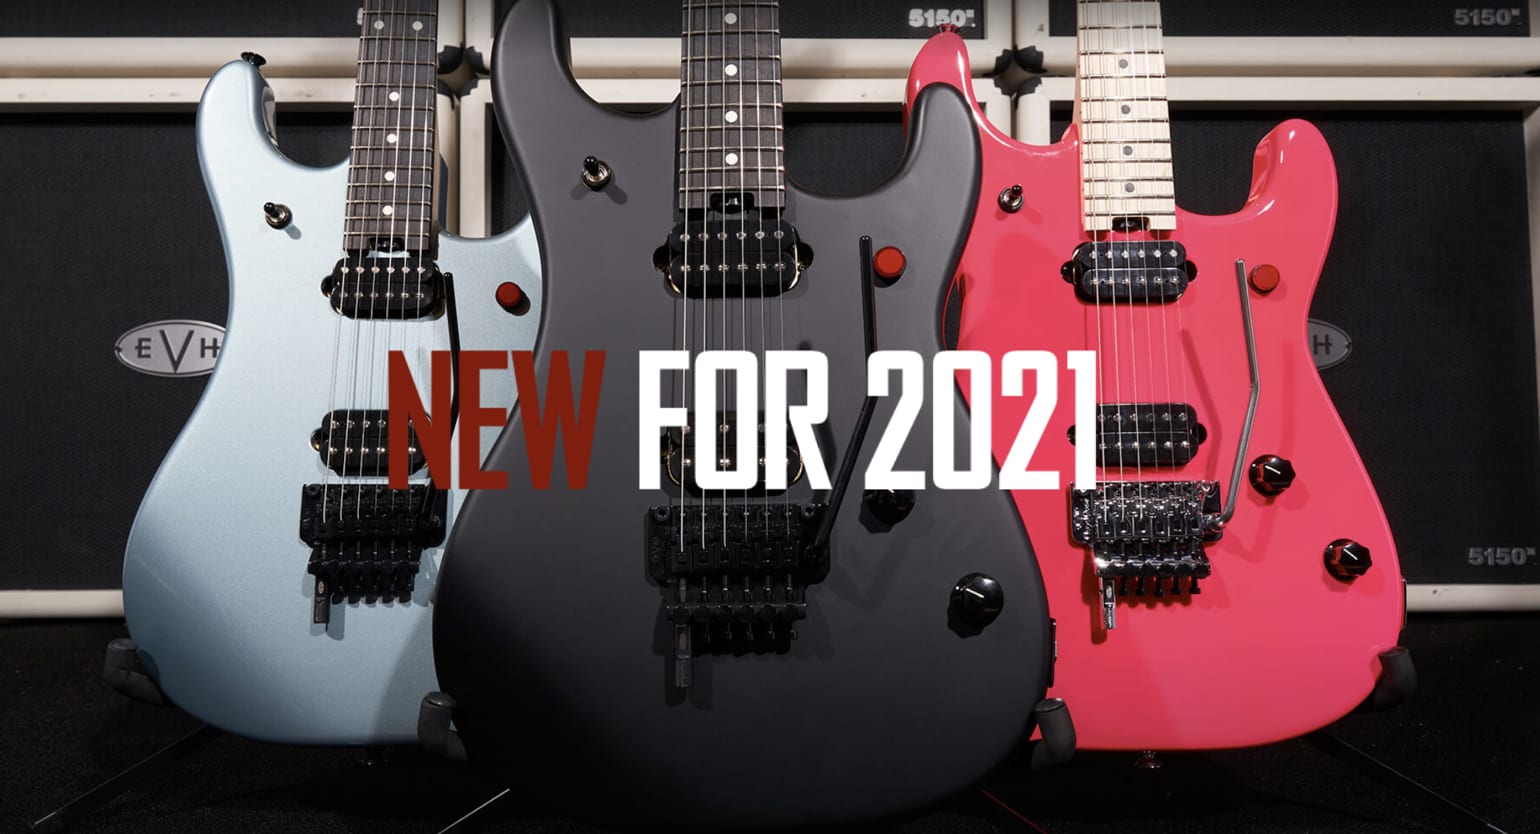 EVH 5150 2021 lineup announced